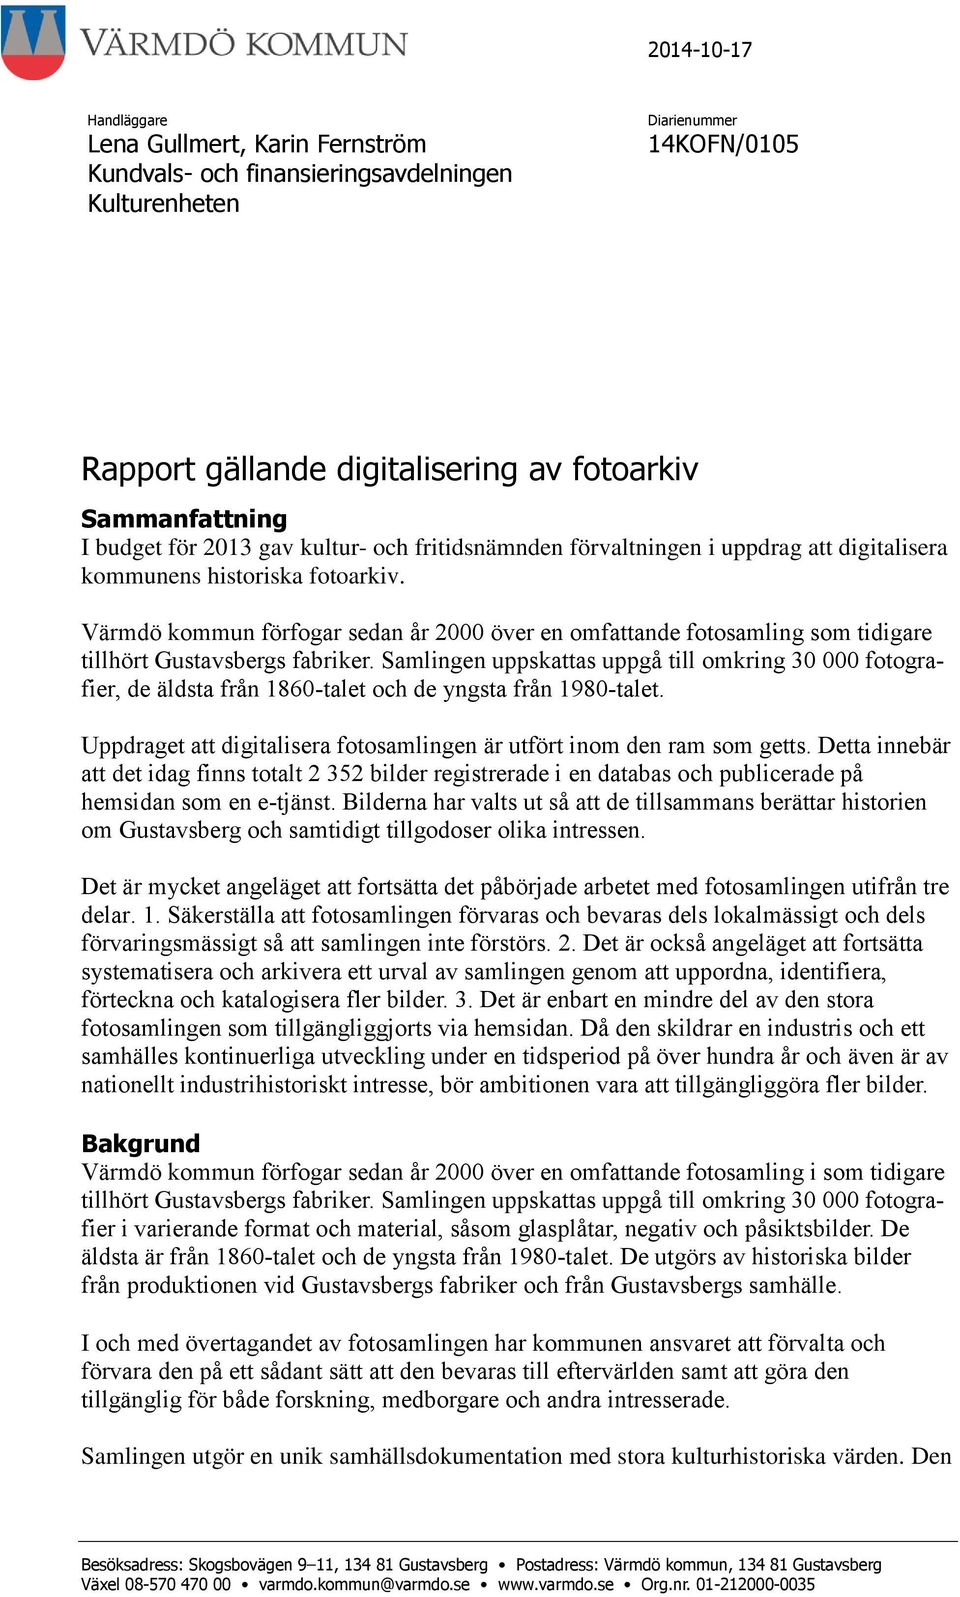 Värmdö kommun förfogar sedan år 2000 över en omfattande fotosamling som tidigare tillhört Gustavsbergs fabriker.